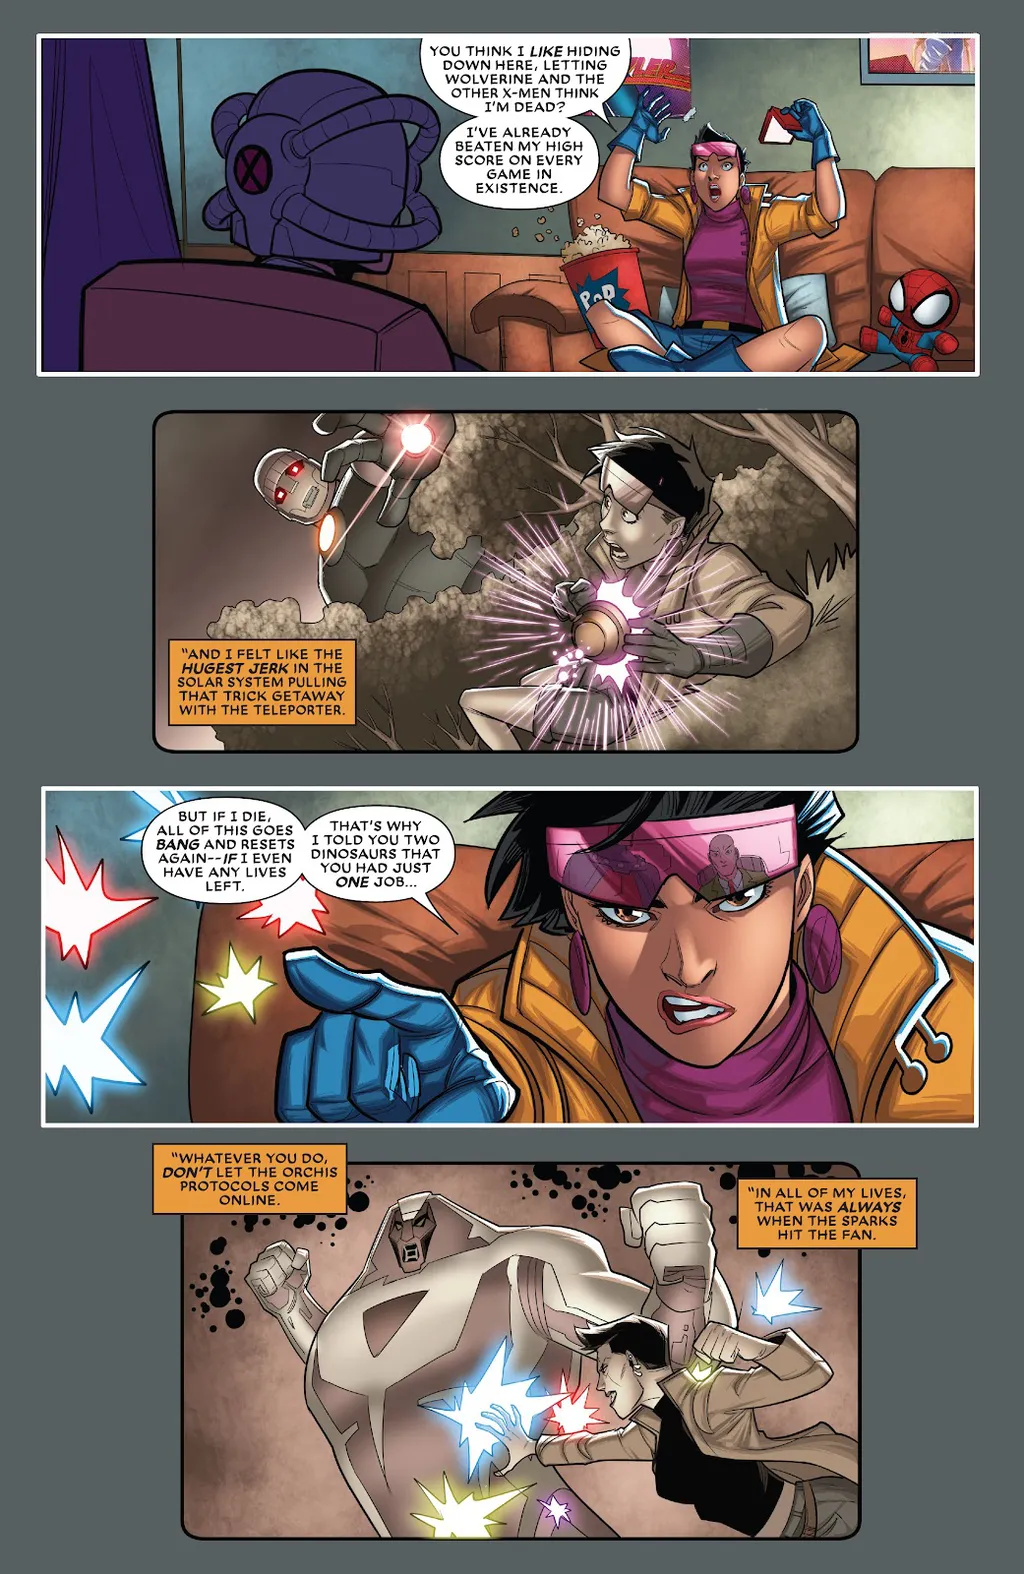 Cena de X-Men '92: House of XCII nº 1 mostra o novo superpoder de Jubileu (Imagem: Reprodução/Marvel)